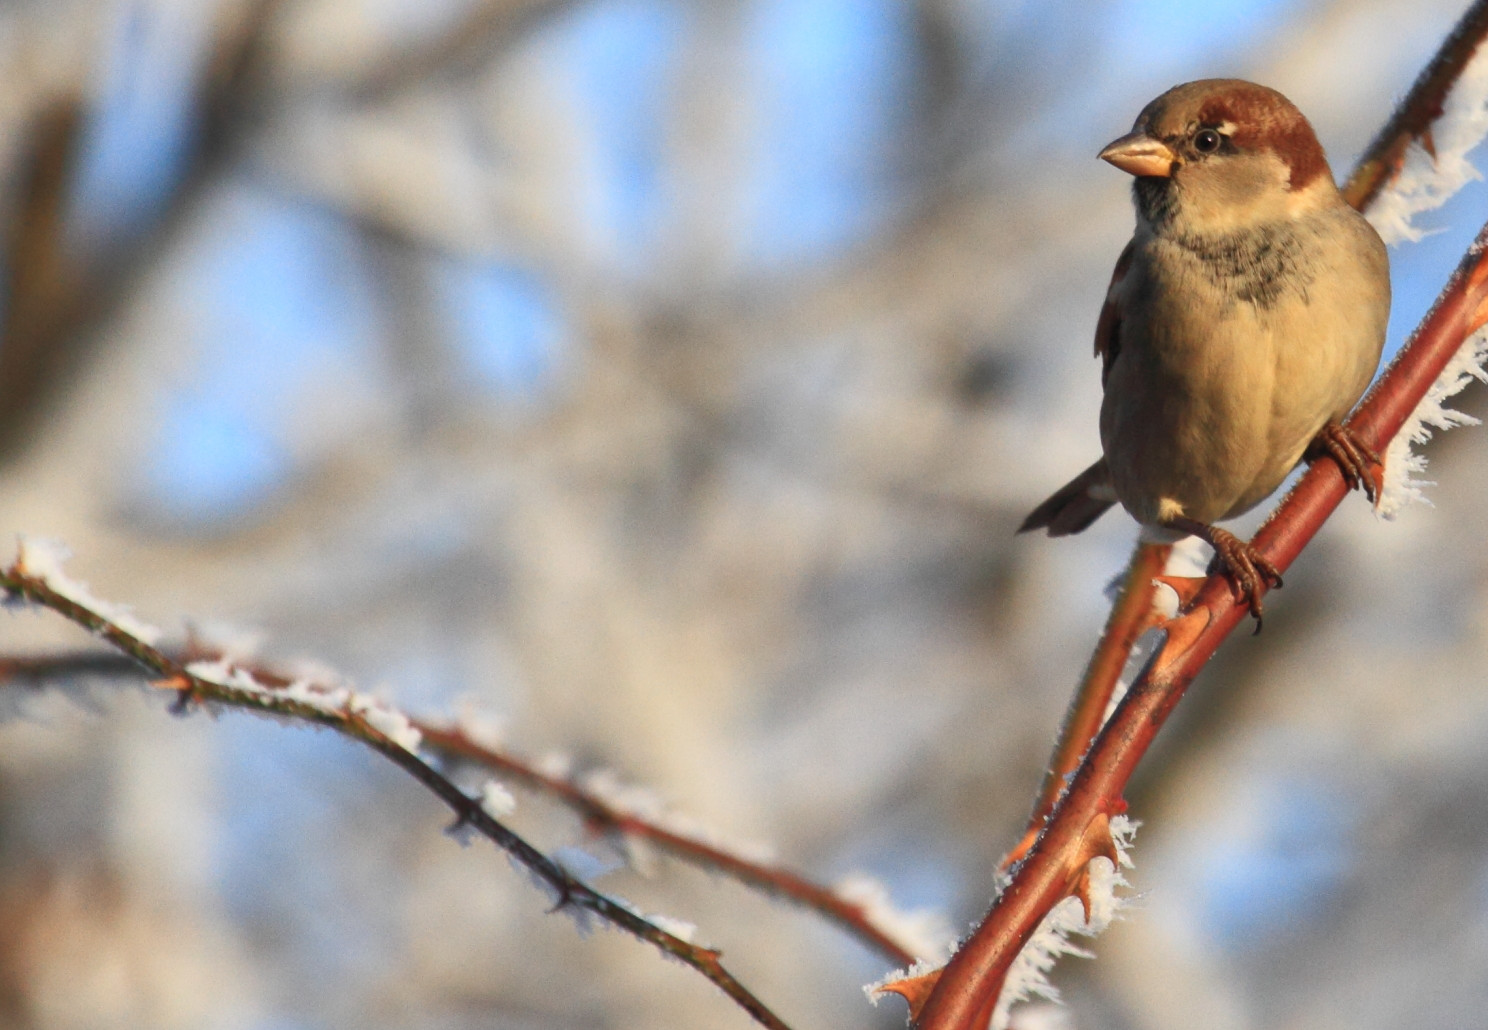 Nourrir les oiseaux en hiver - QUATRE PATTES en France